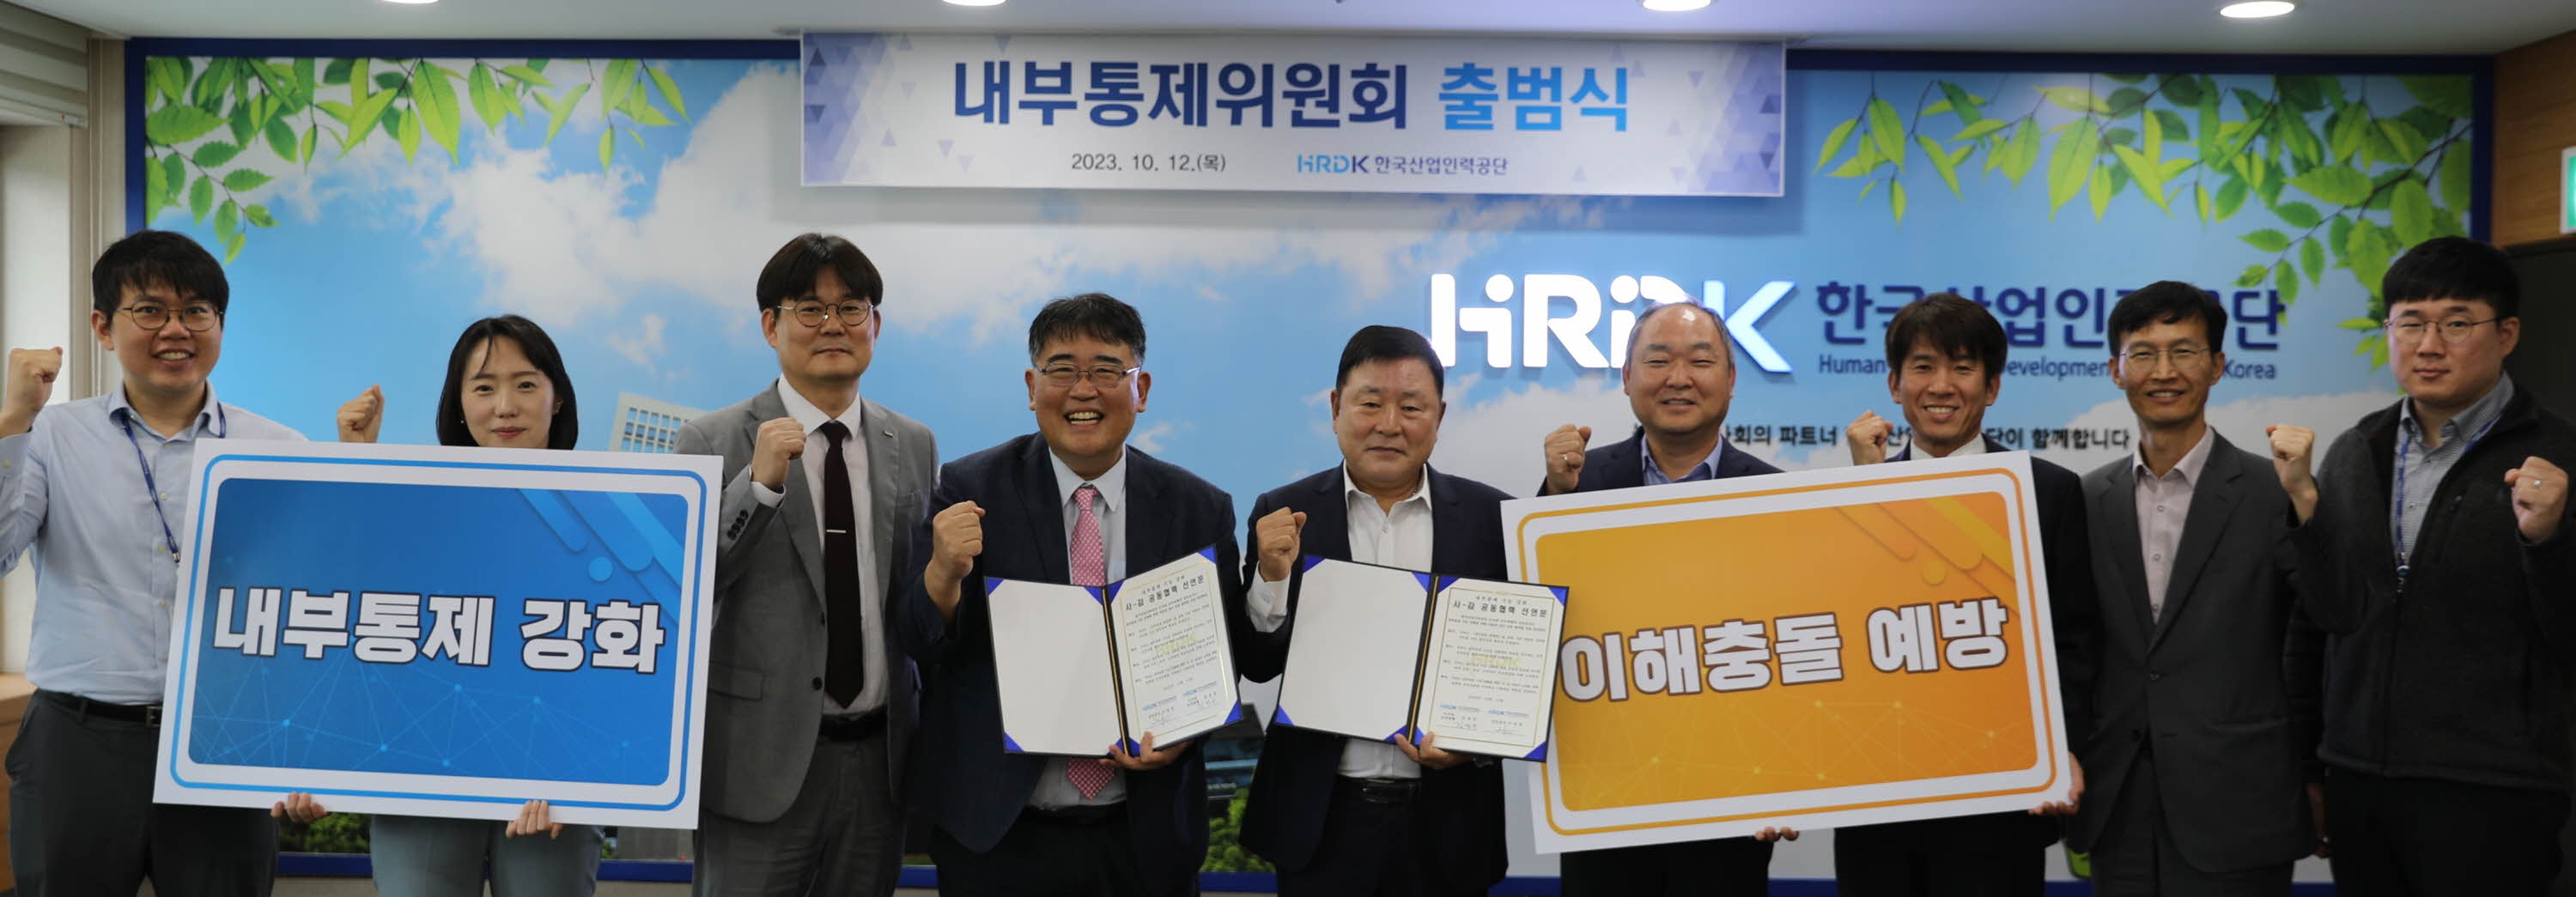 한국산업인력공단은 지난해 10월 12일 이성경(왼쪽 다섯 번째) 상임감사가 참석한 가운데 내부통제위원회 출범식을 가졌다. 한국산업인력공단 제공